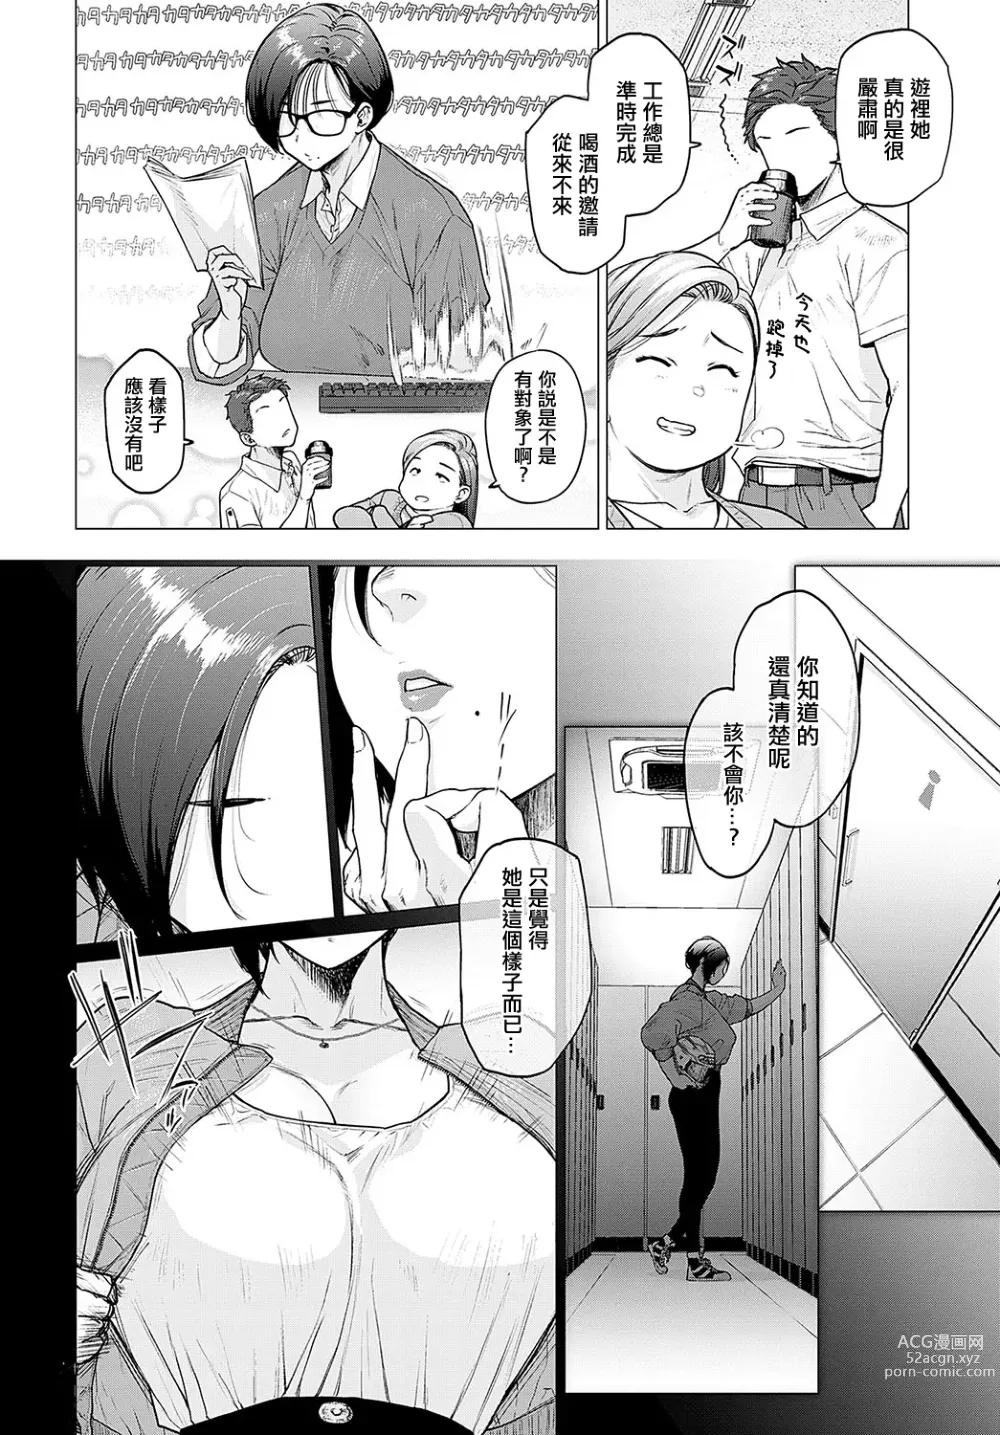 Page 2 of manga Kore ga Watashi no Solo-katsu Life